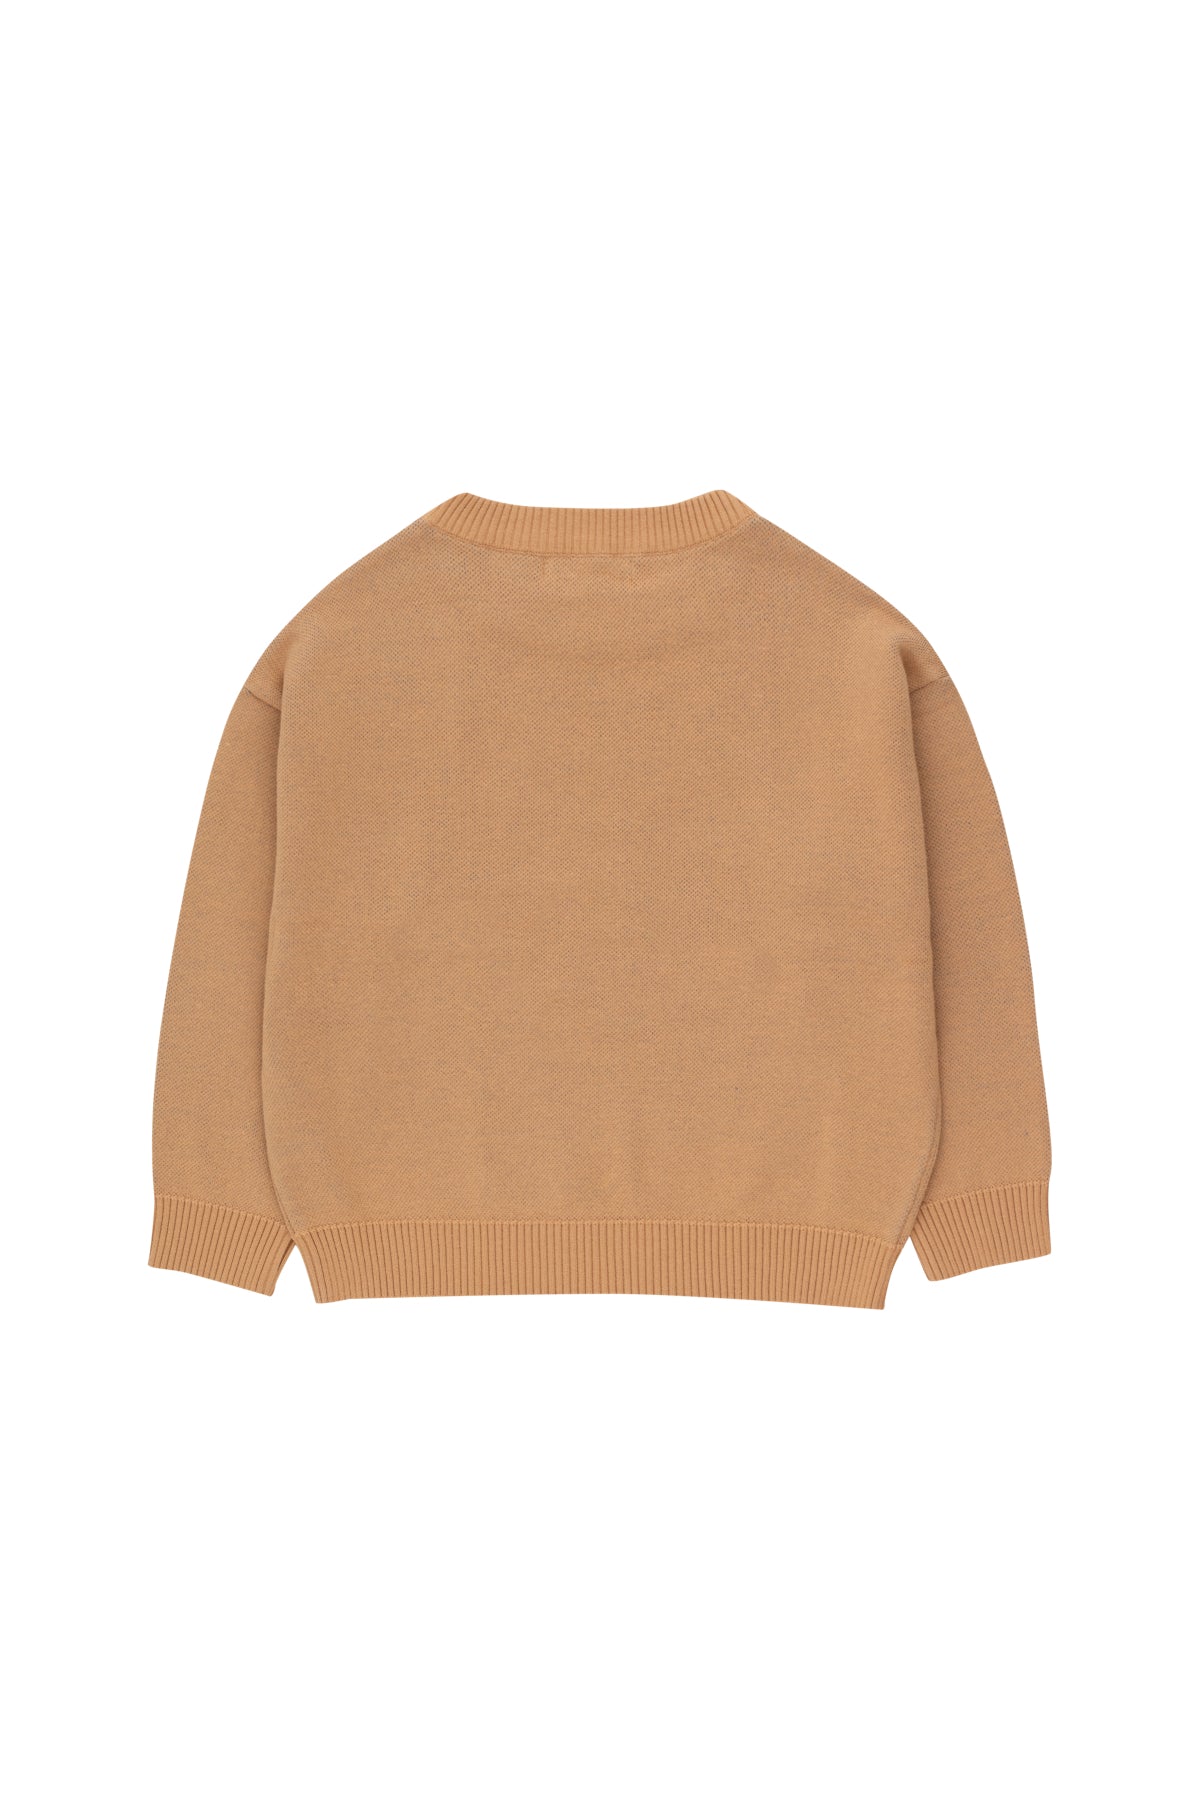 Peace Sweater - almond